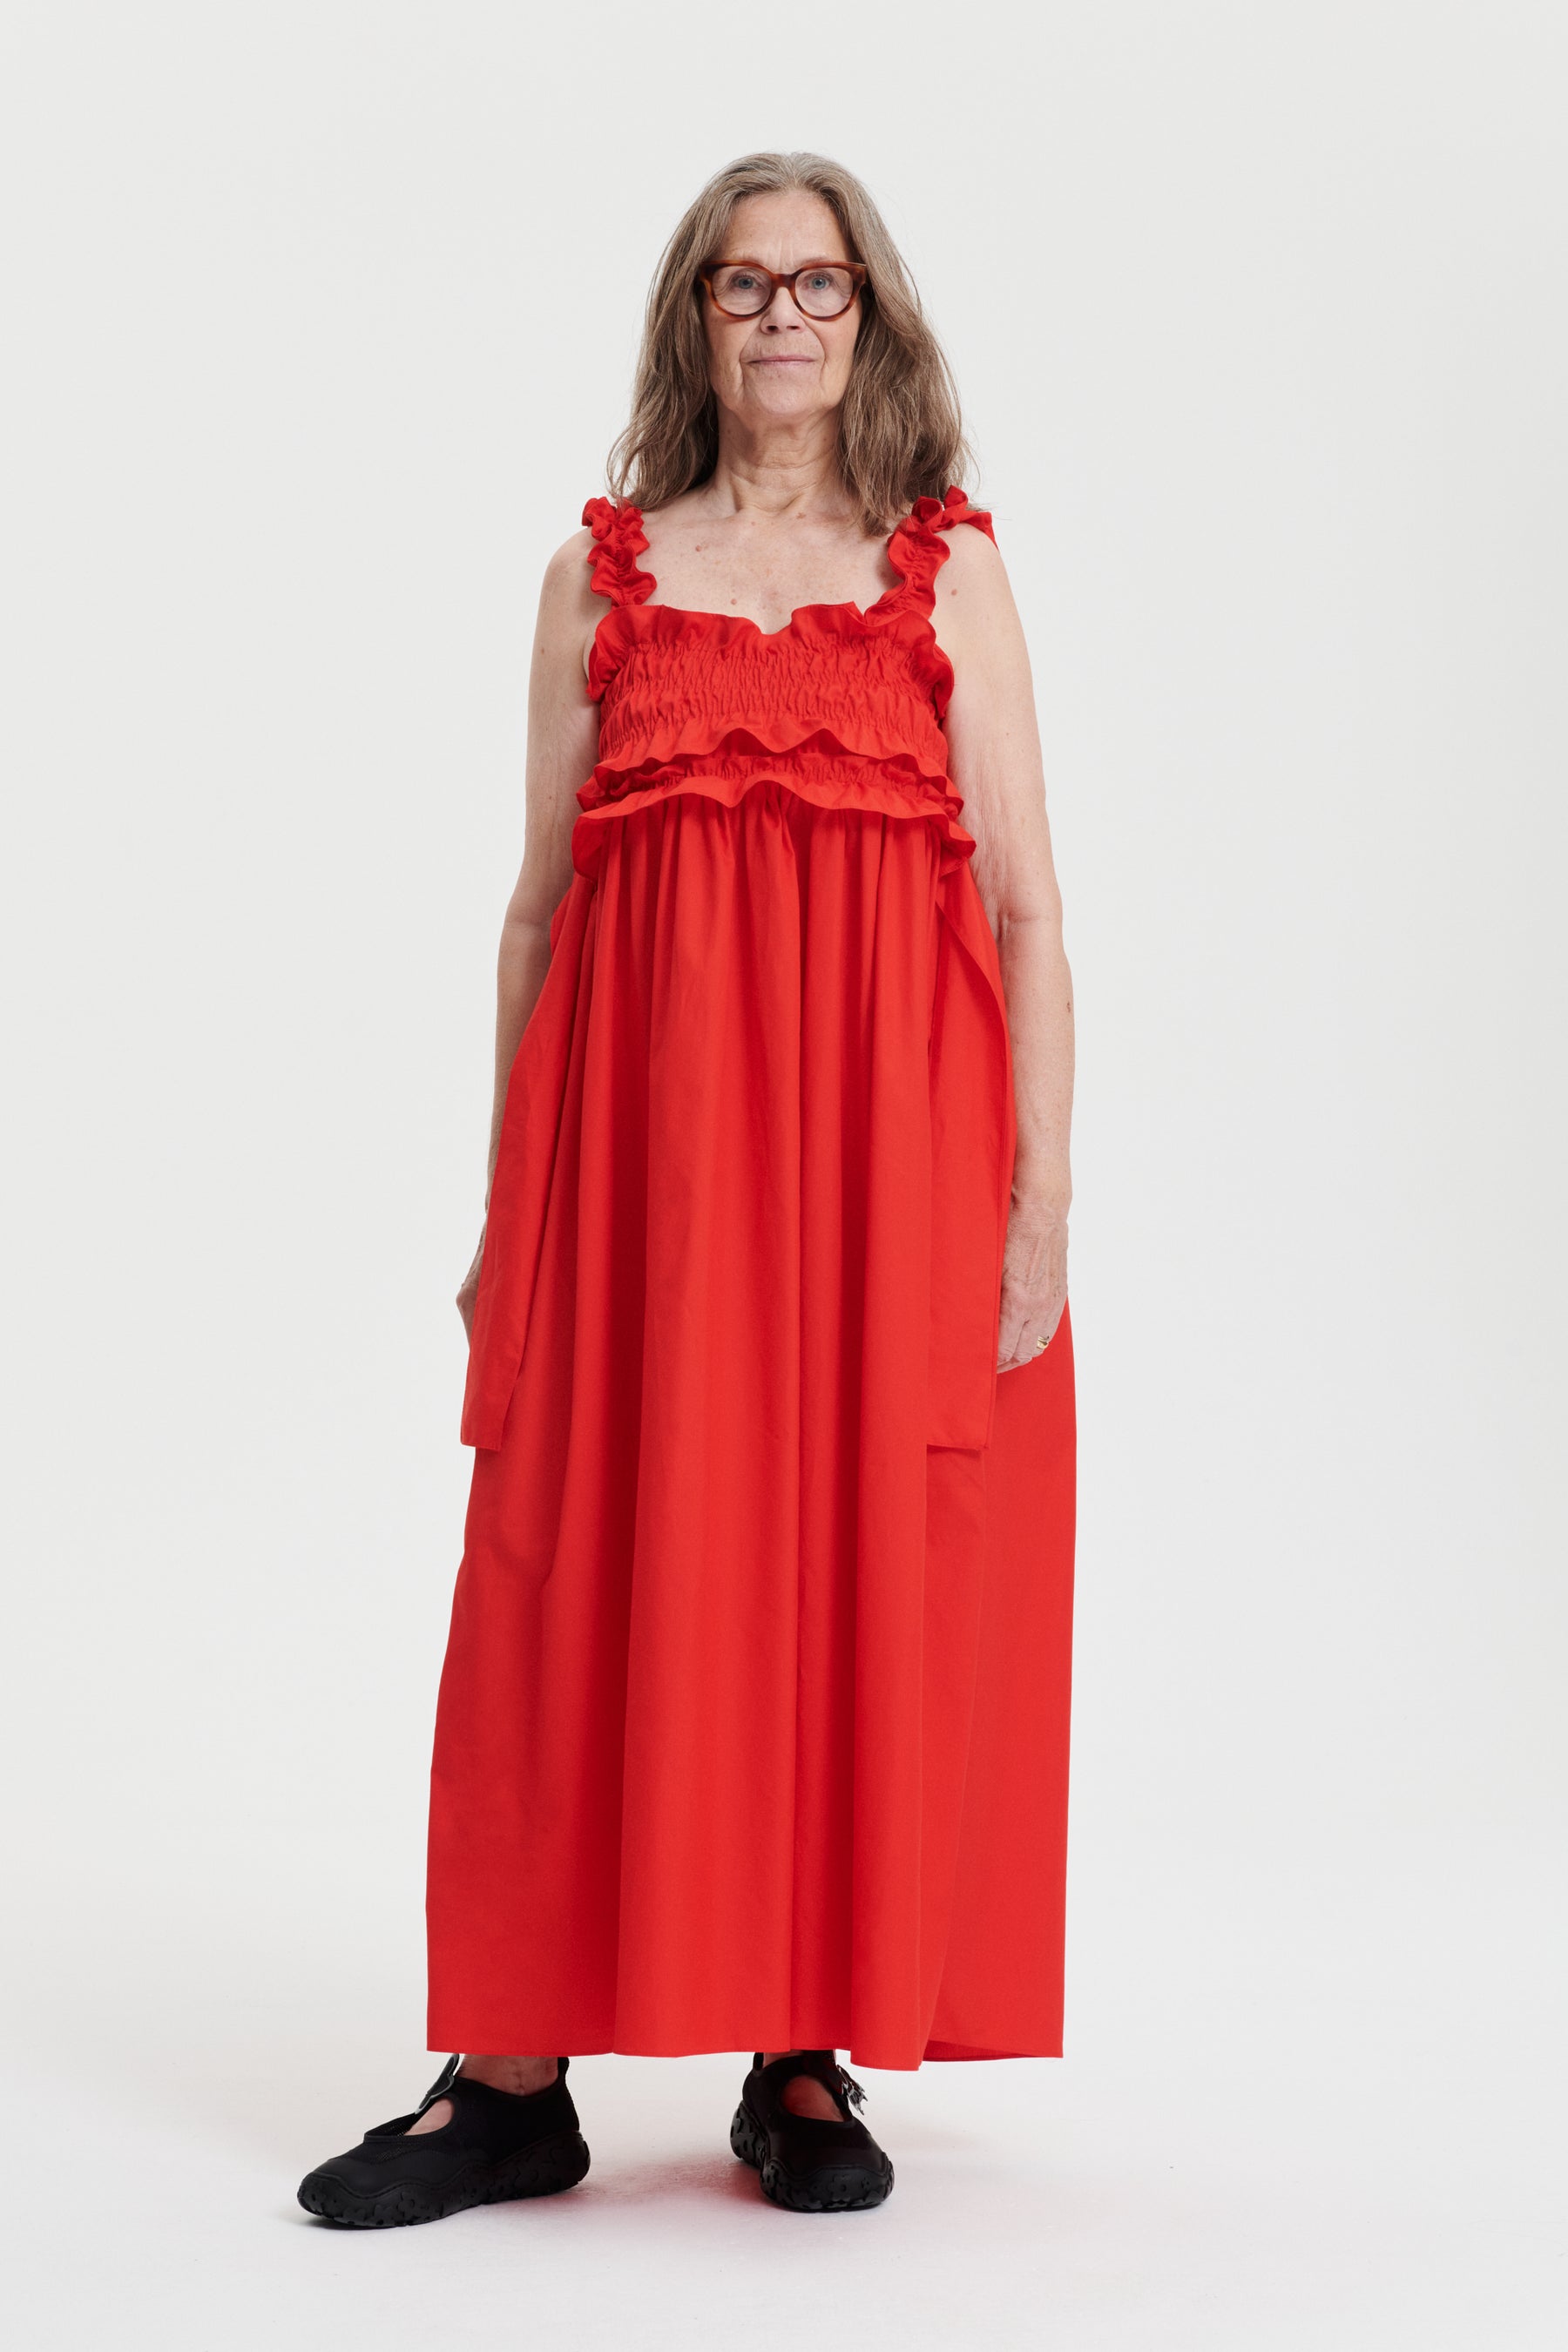 Shibori Printed Cotton Gown in Red : TBZ131